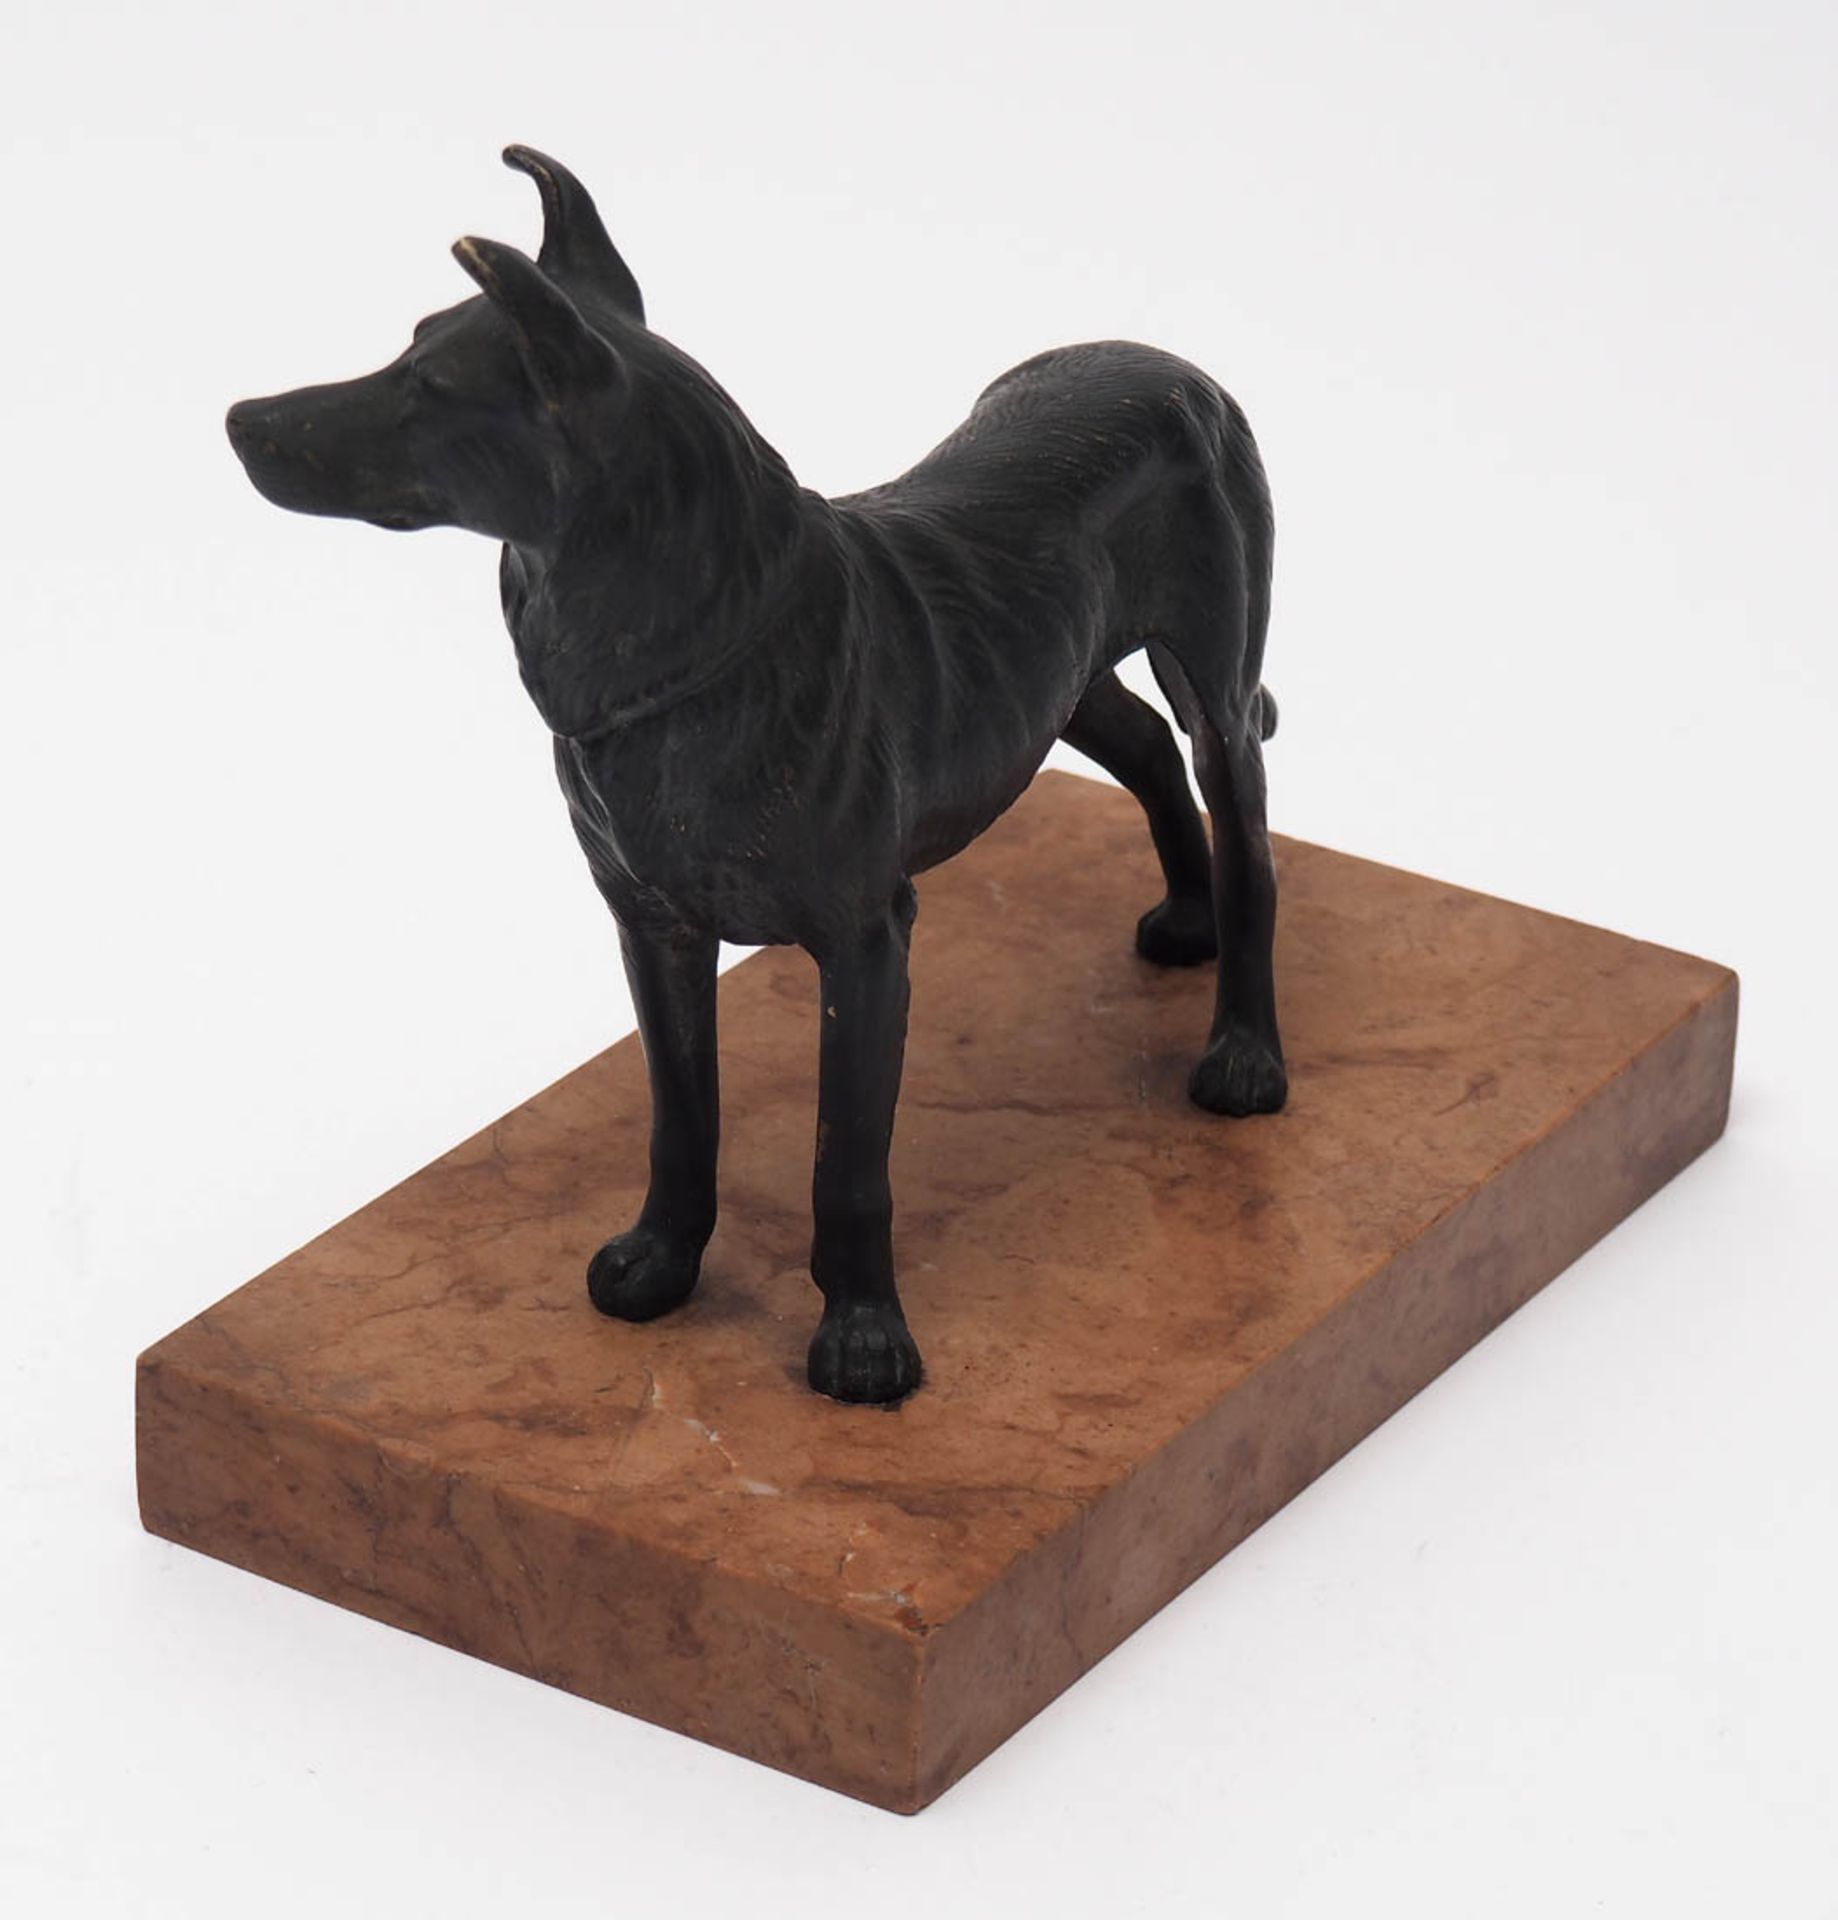 Tierfigurine Auf rotem Marmorsockel stehender Schäferhund. Bronze, schwarz patiniert. H.13cm ohne - Bild 2 aus 2